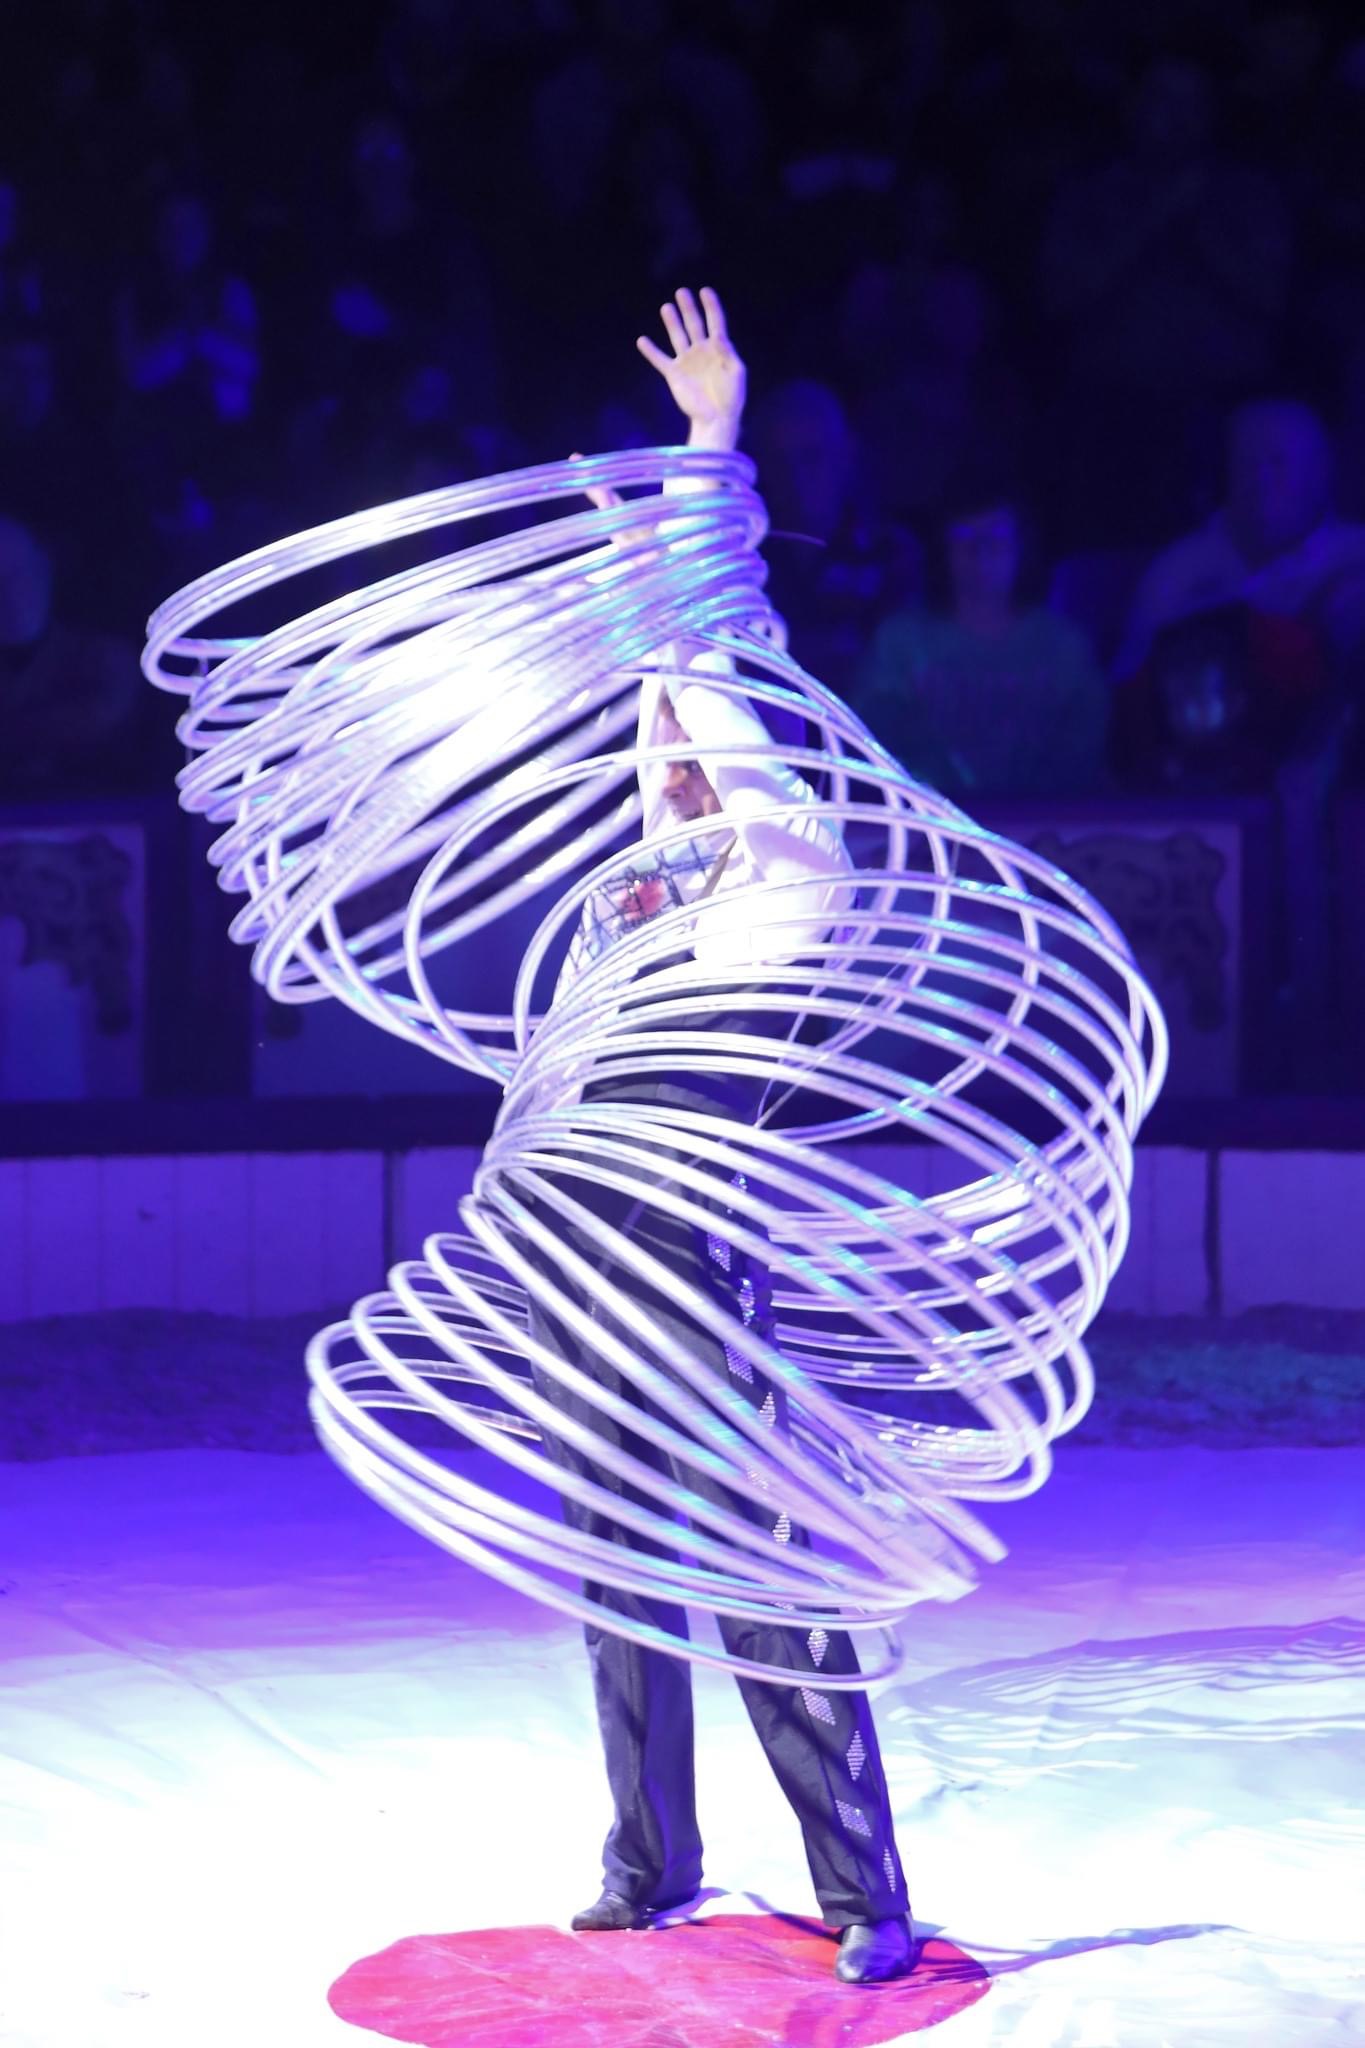 Réservez ce numéro de cirque (hula hoop) en France